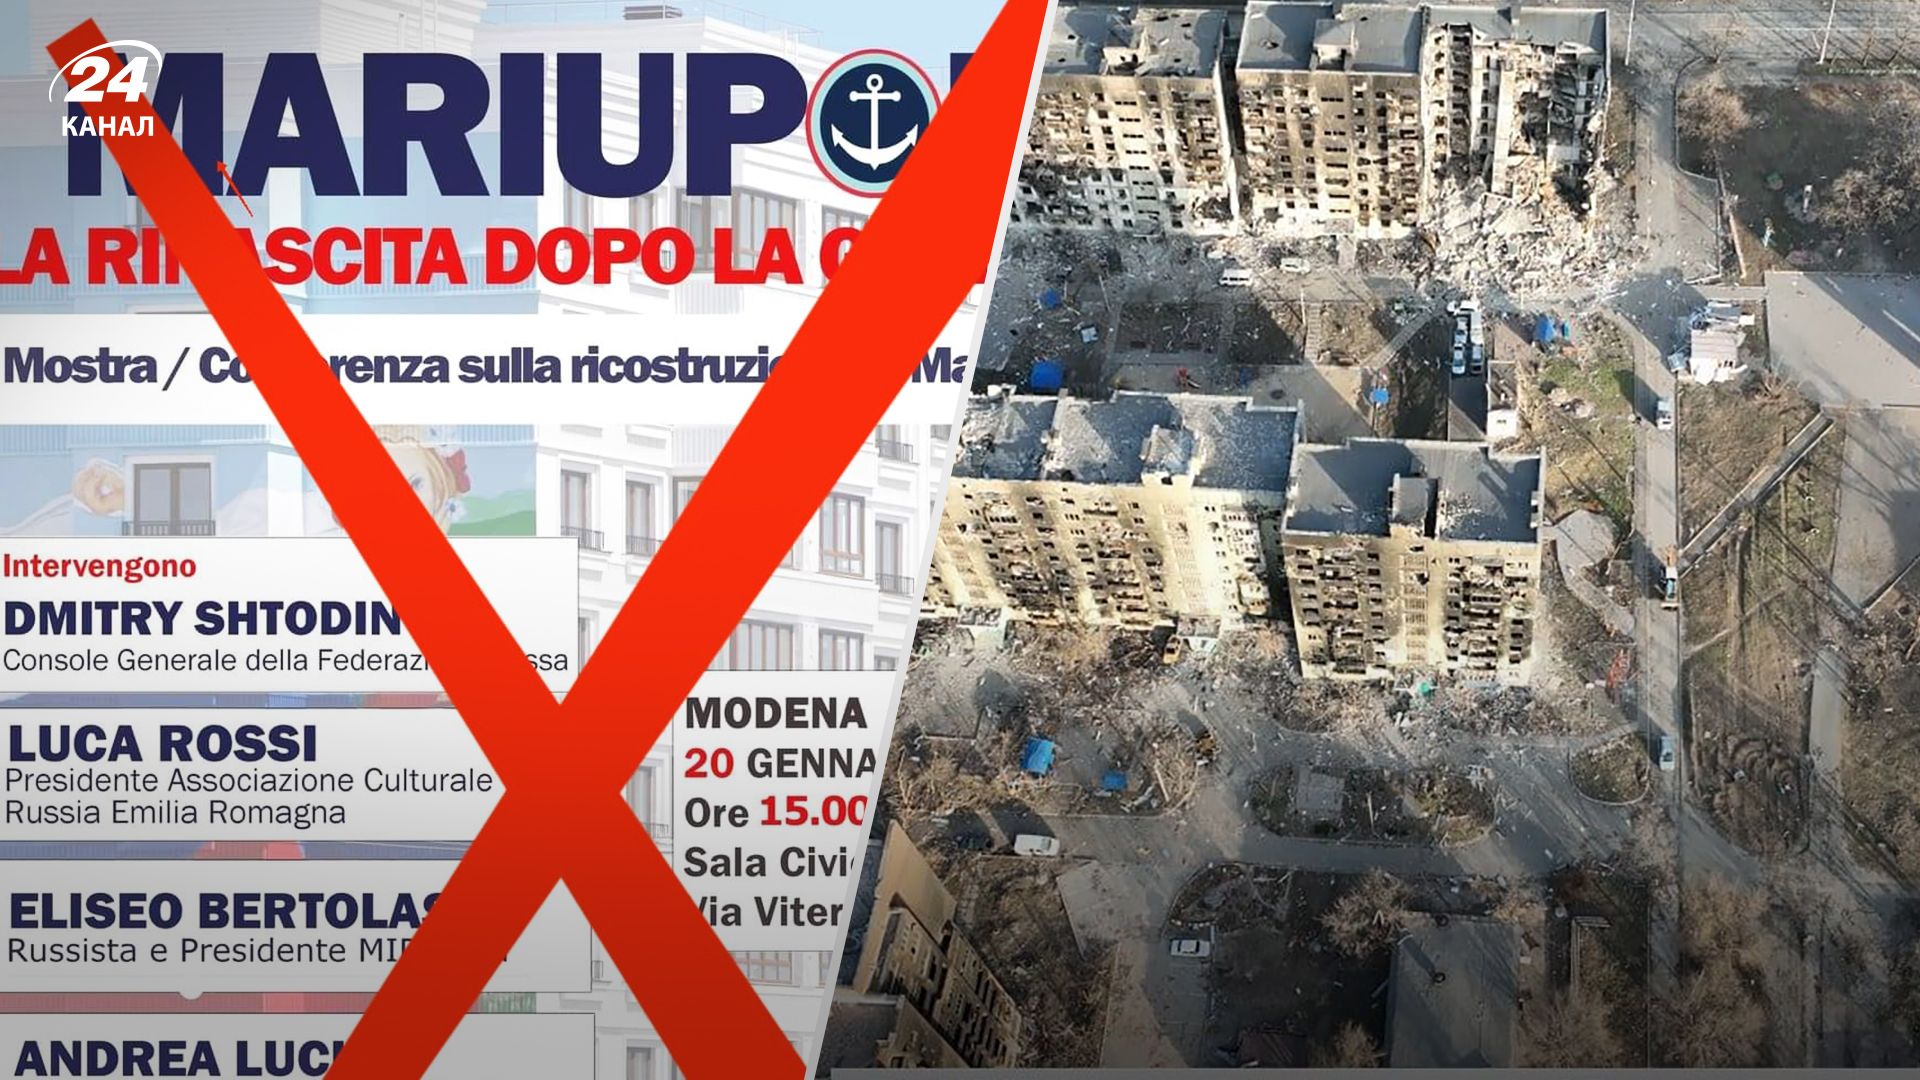 Пропагандистську виставку про Маріуполь у Модені скасували - деталі від МЗС